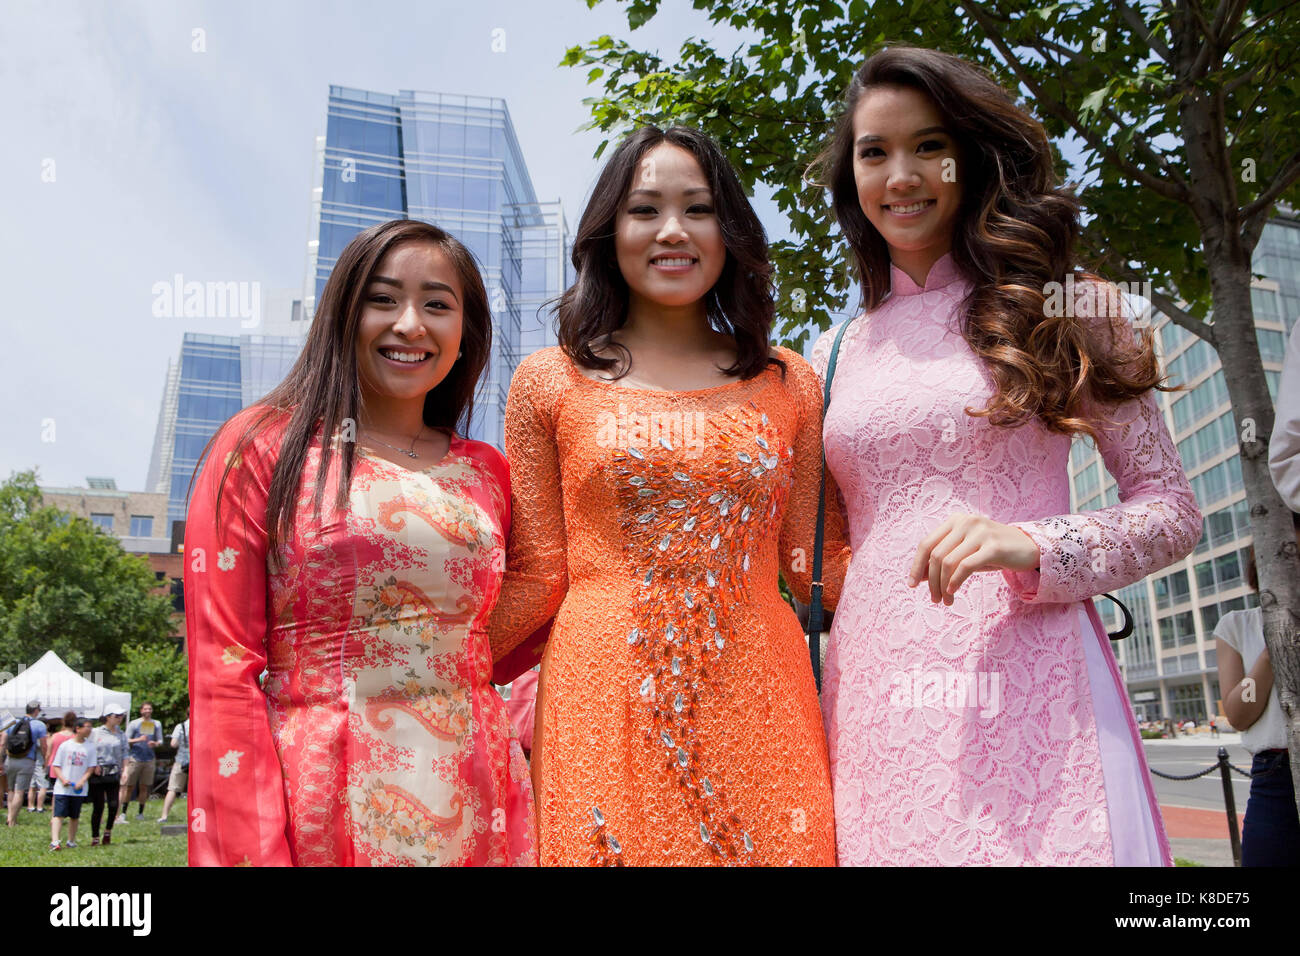 Giovani donne asiatiche che posano per una foto a Chinatown Park - Washington DC, Stati Uniti d'America Foto Stock